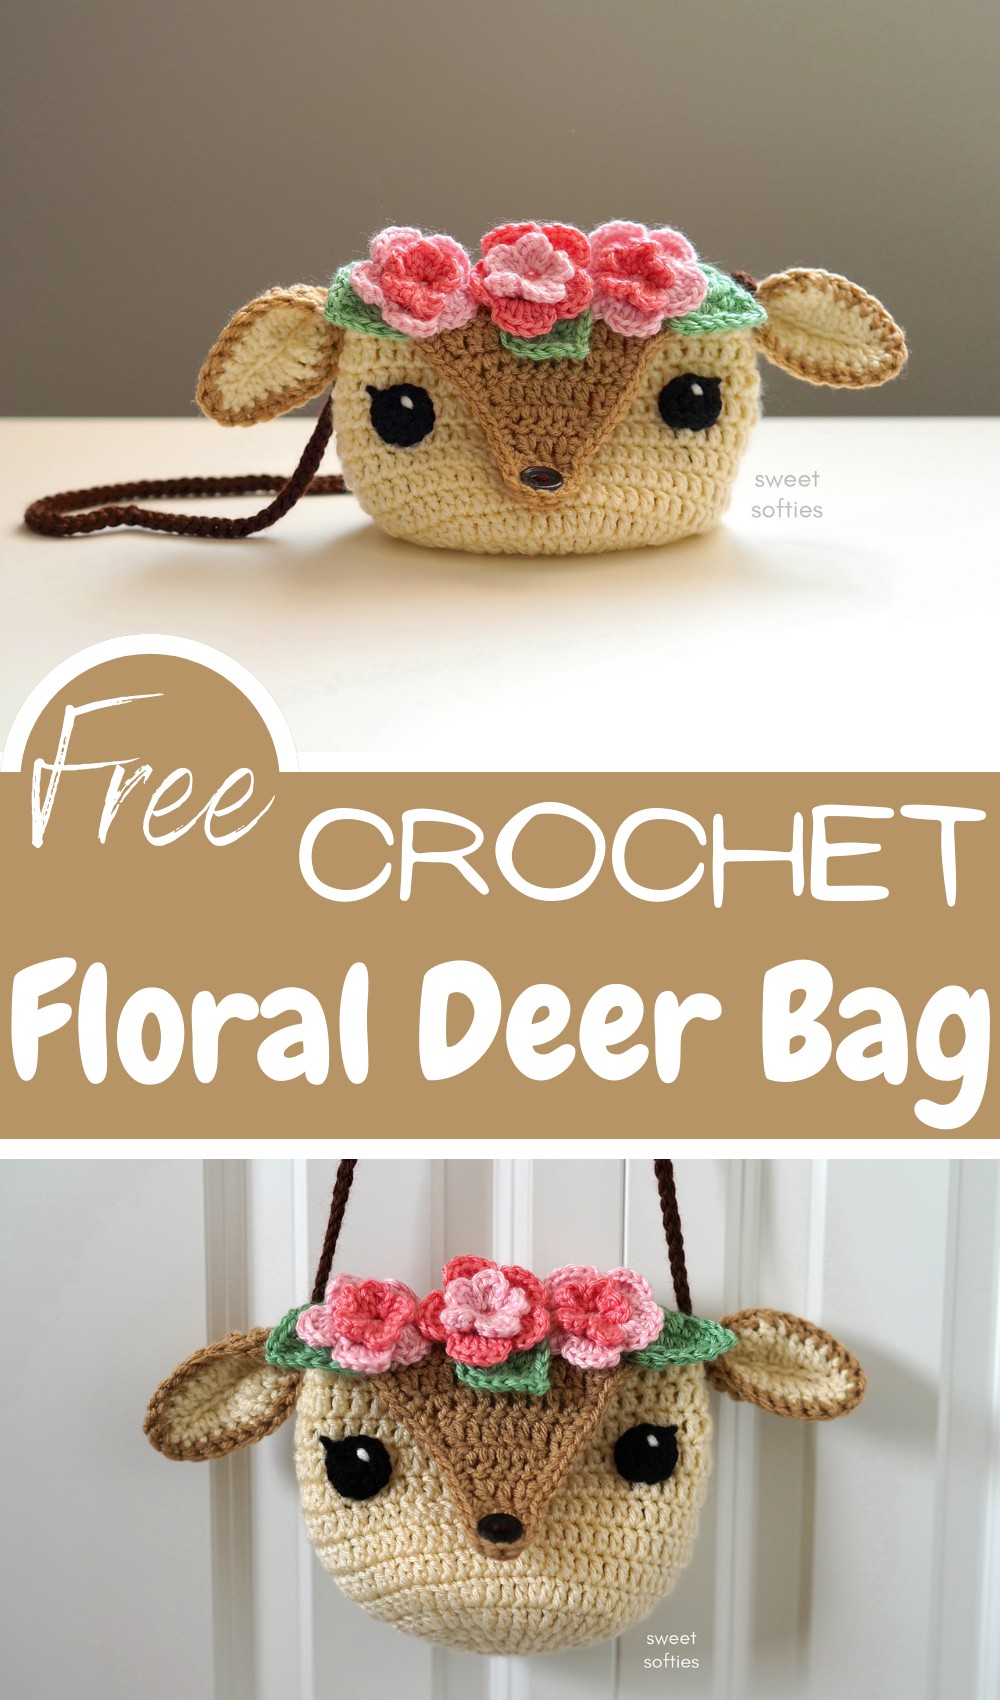 Floral Deer Bag